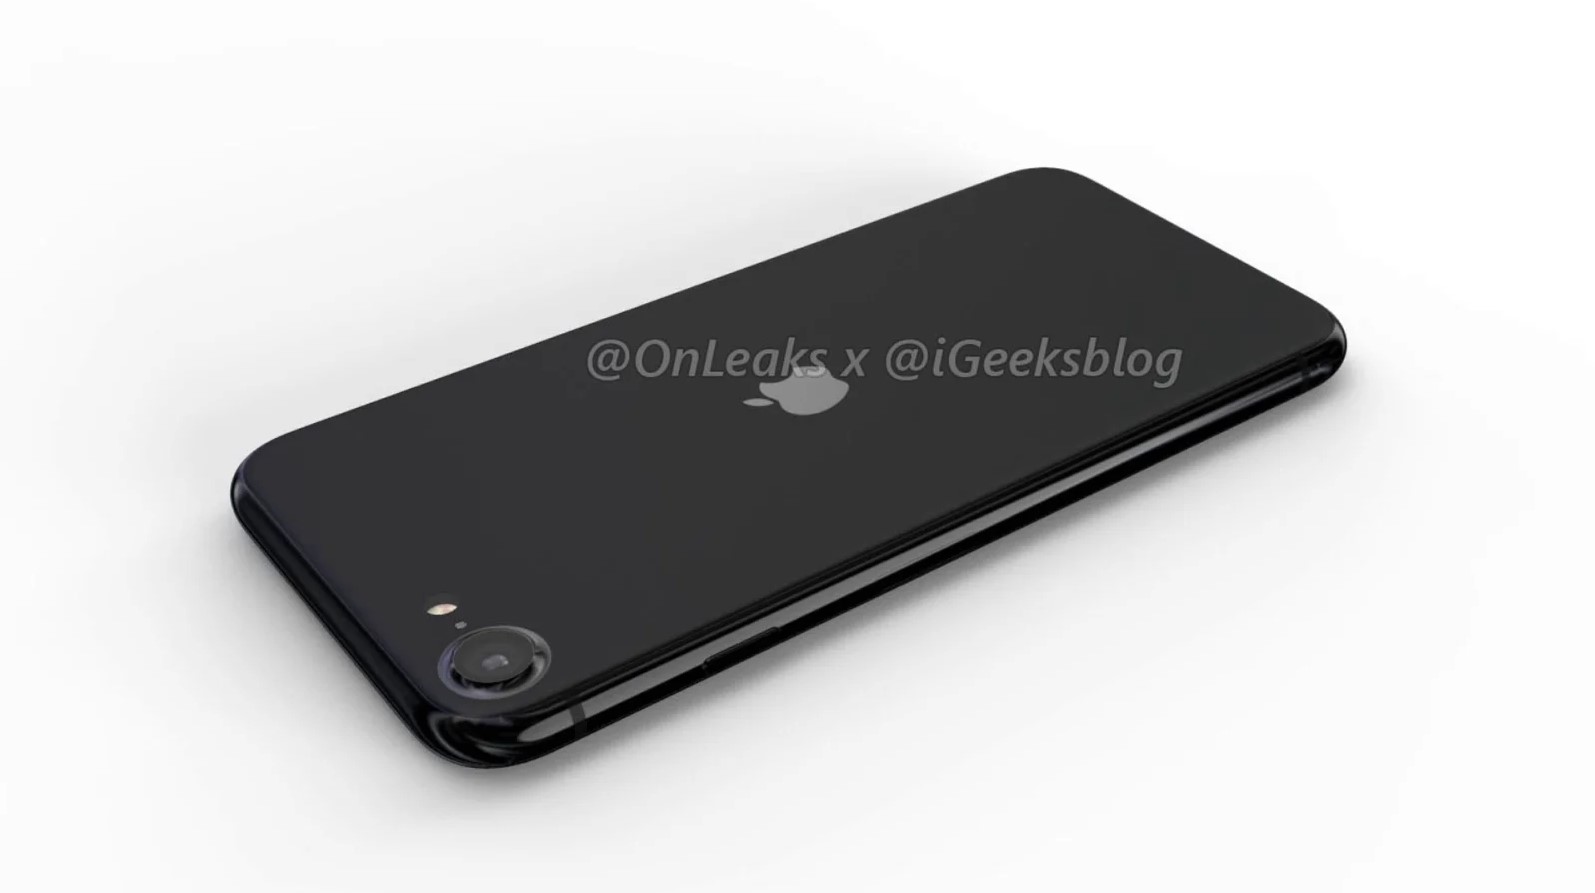 Filtrado el aspecto del iPhone 9: así será el móvil barato de Apple